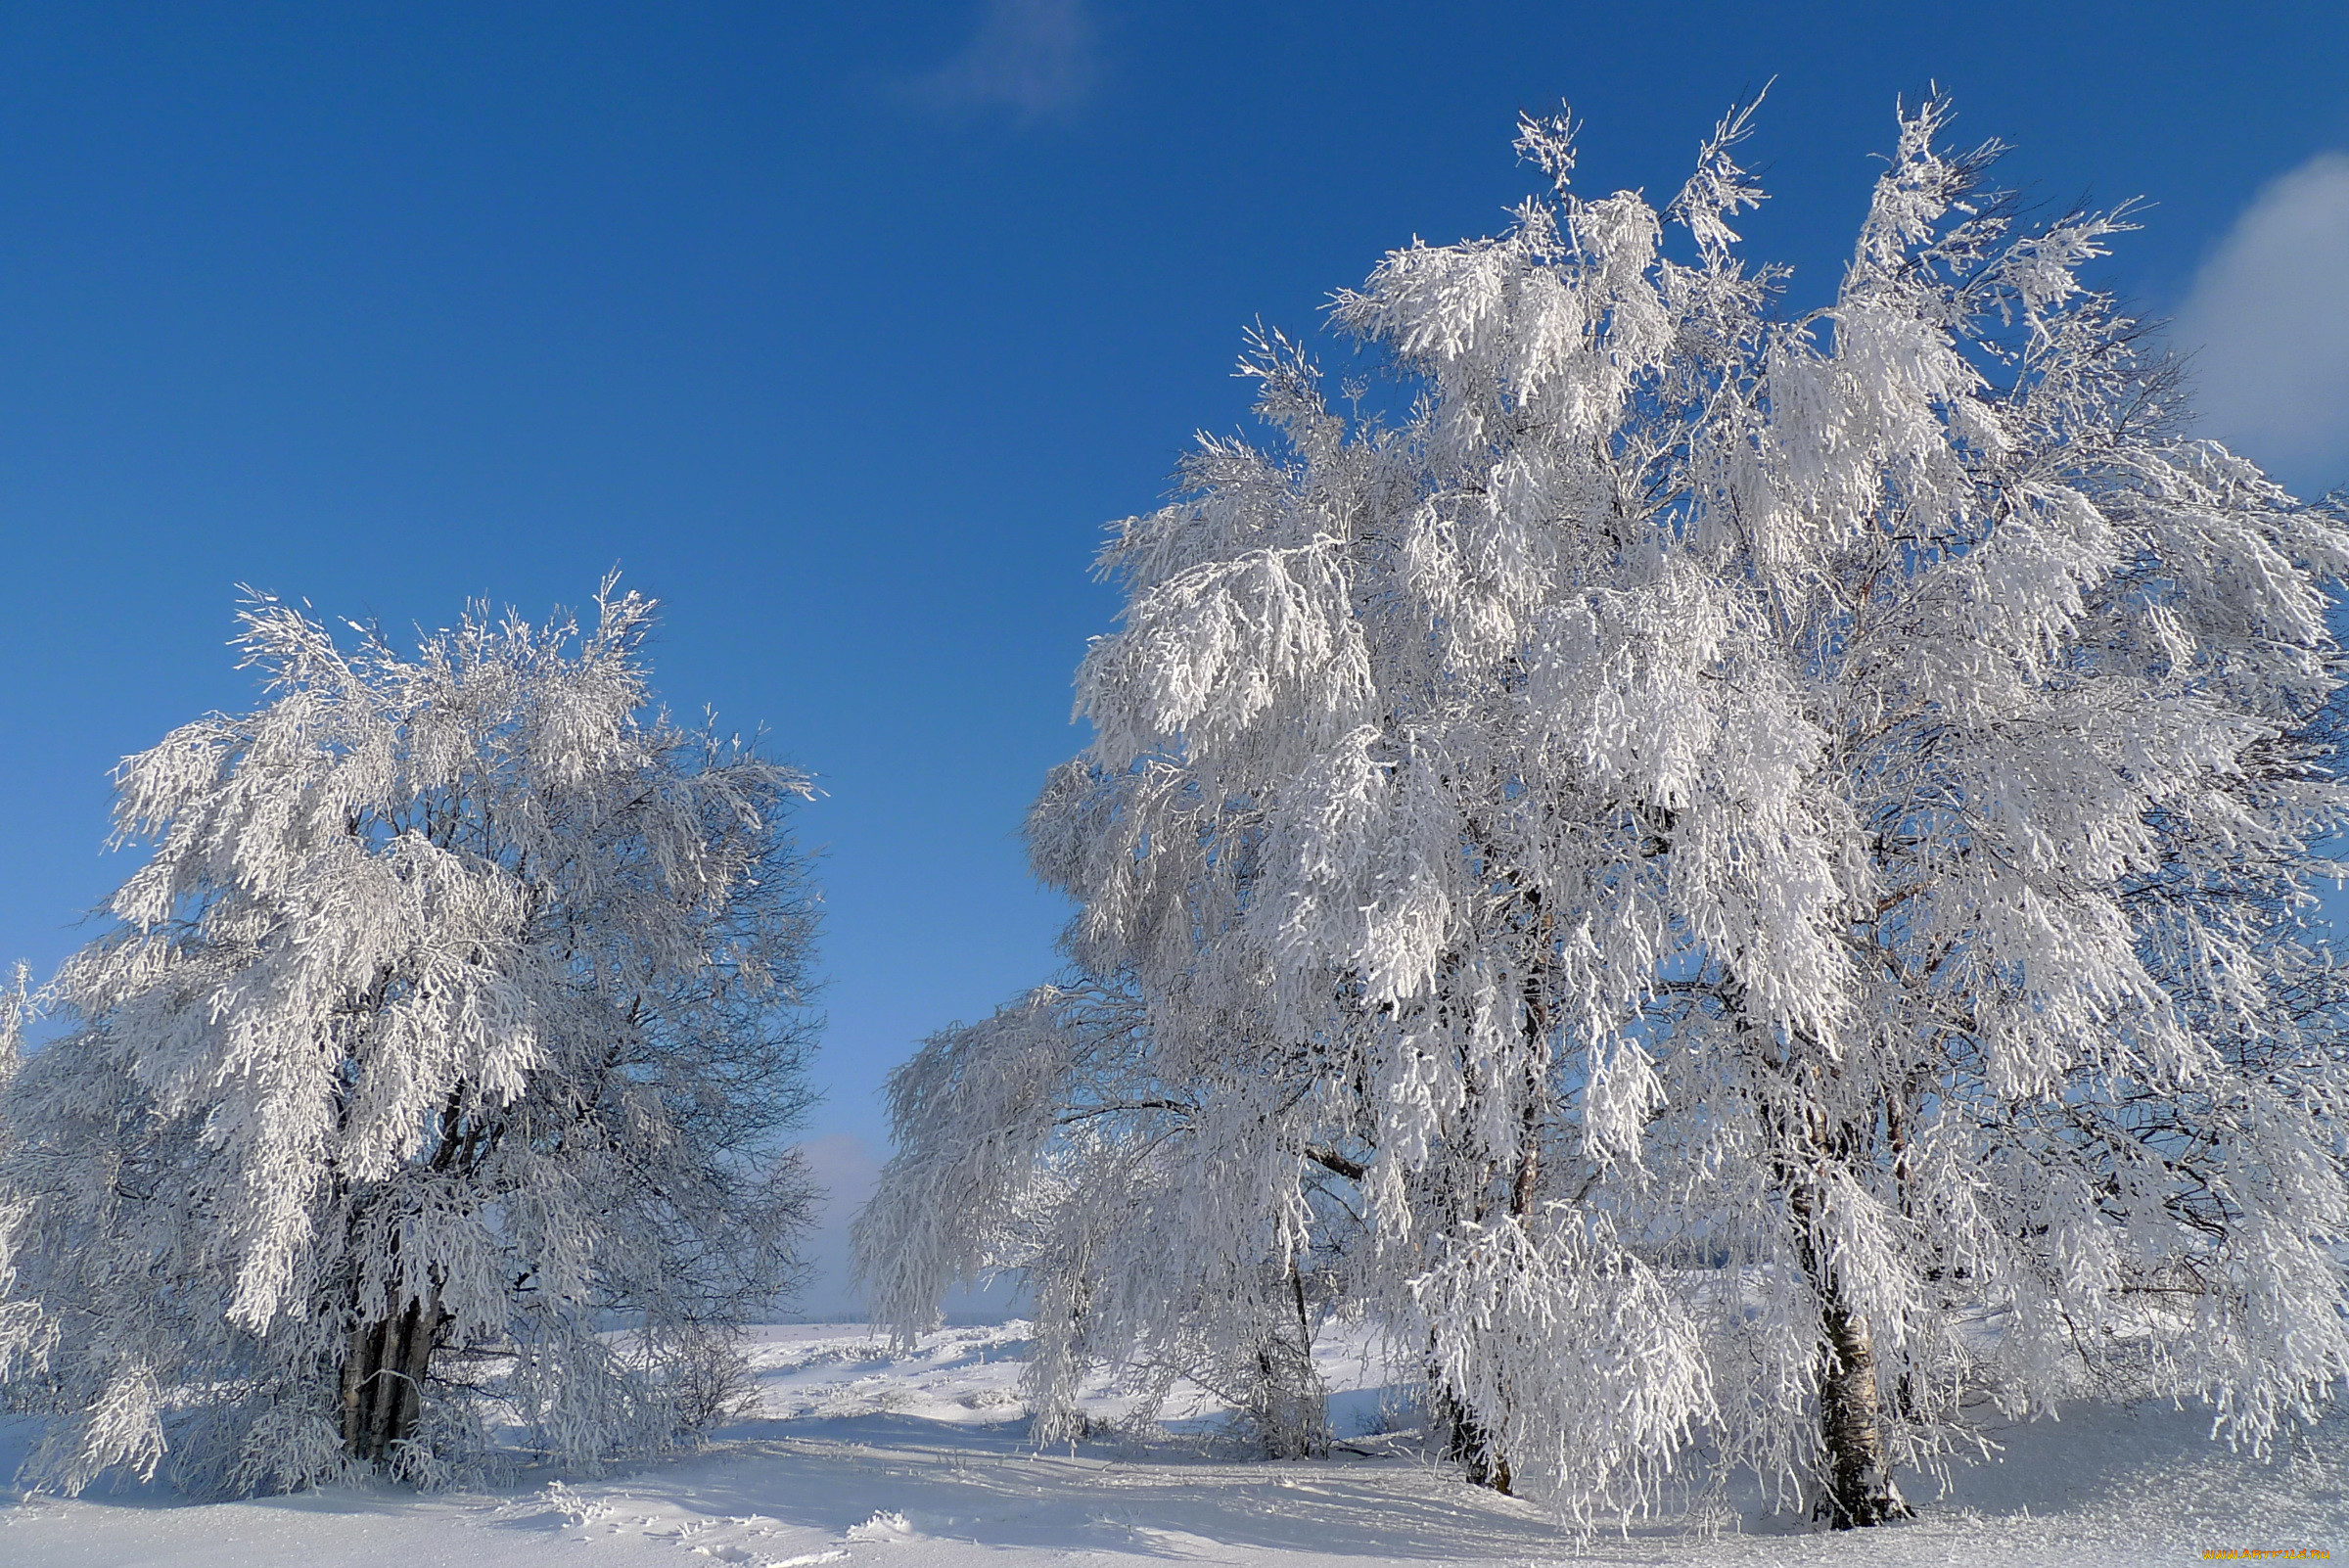 Картинка зимний период. Зимнее дерево. Деревья в снегу. Зимняя природа. Иней на деревьях.